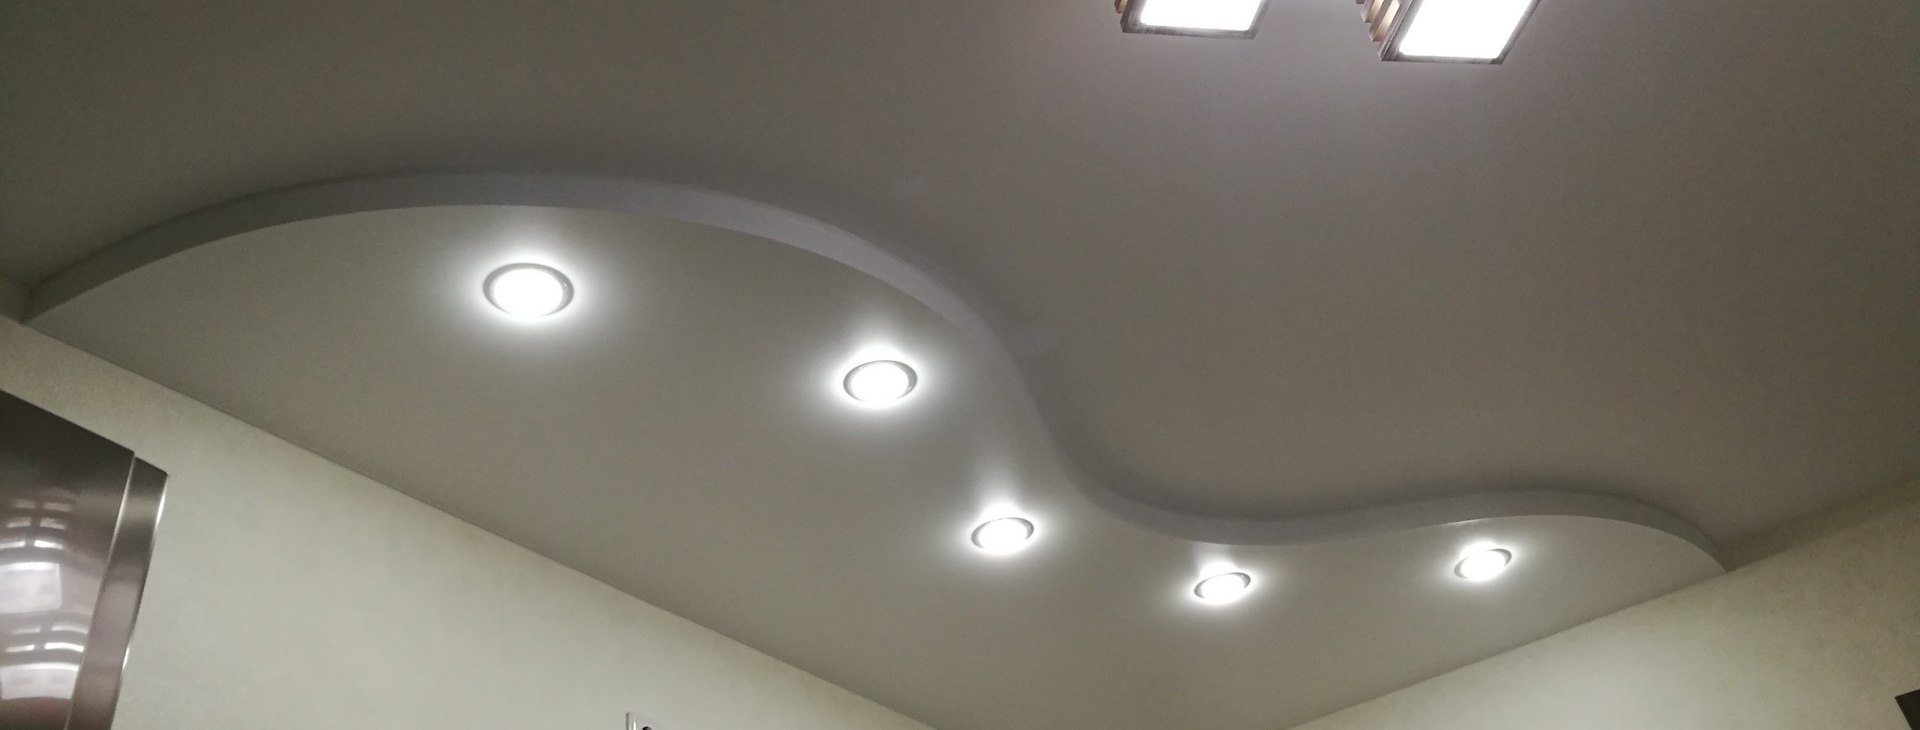 Двухуровневый потолок люстра светильники